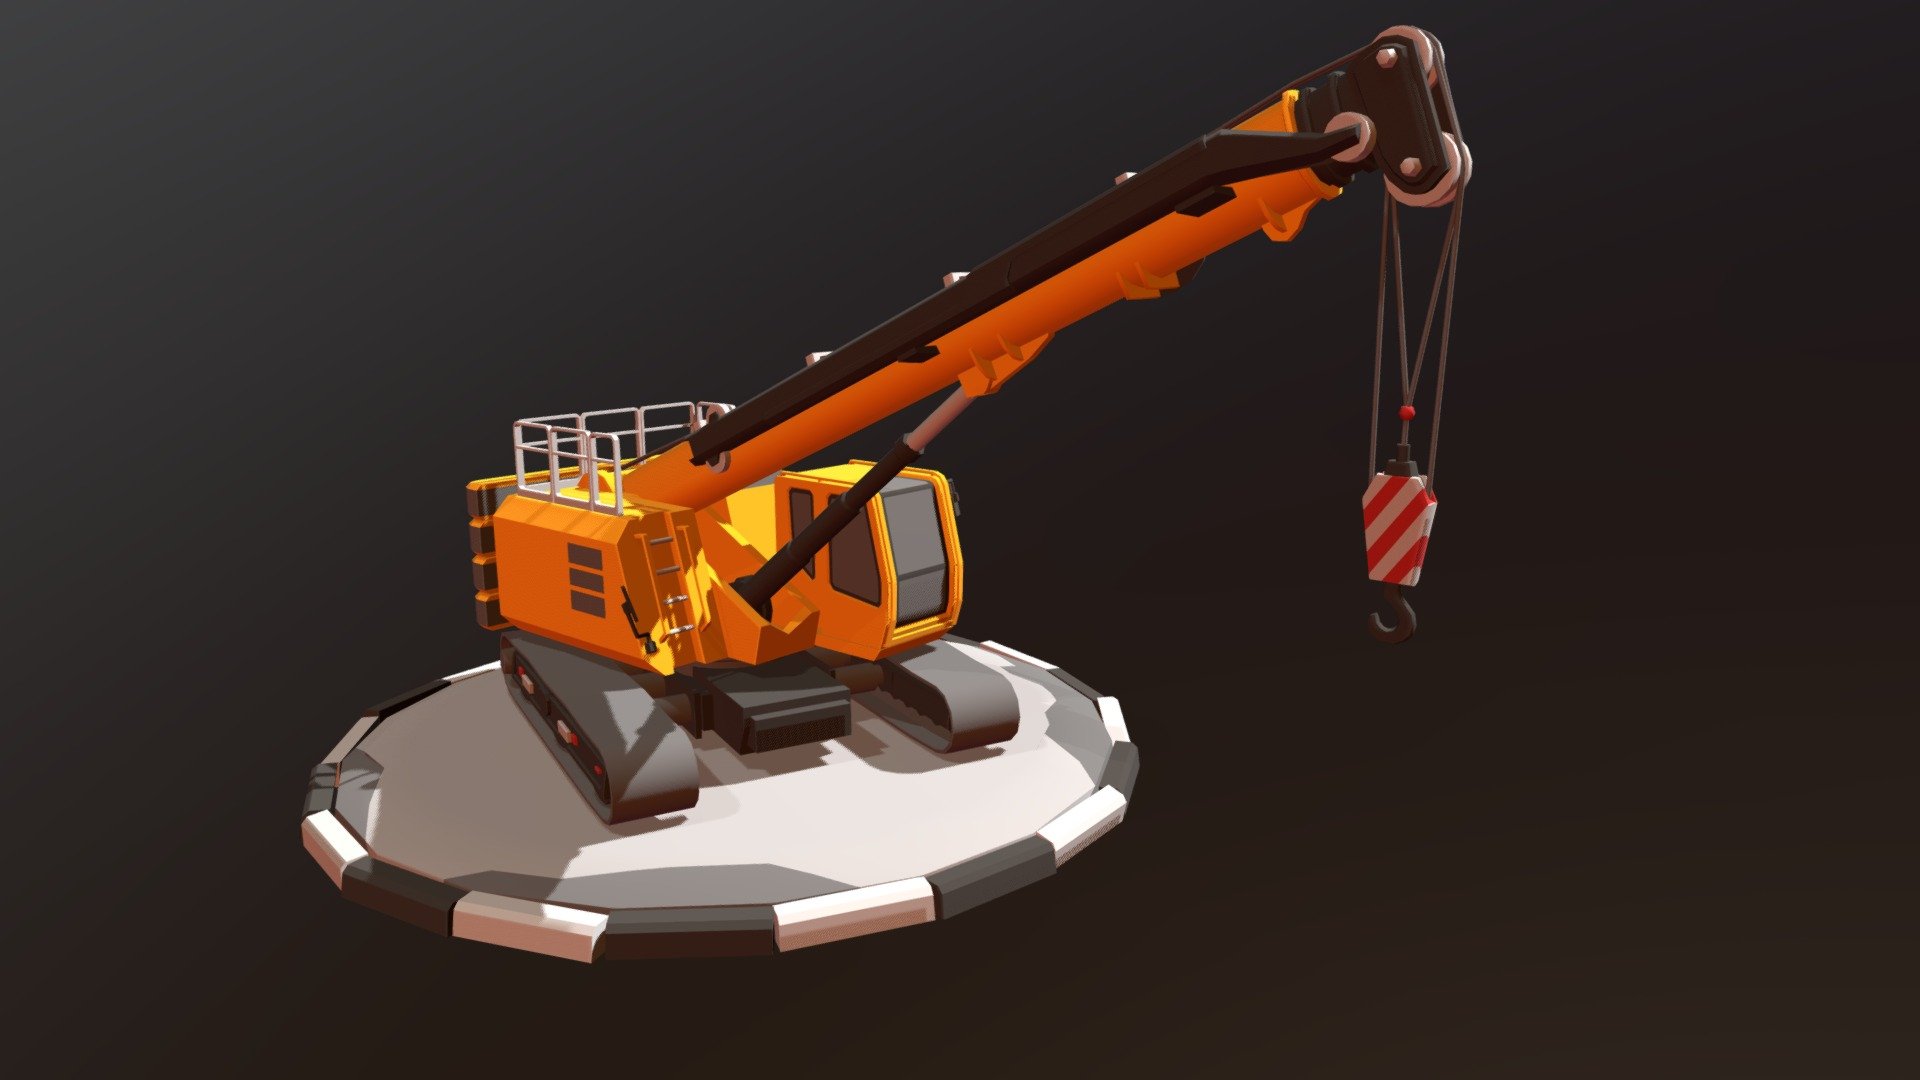 Crane on tracks_DRAFT - 3D model by OlegatoRUS 3d model